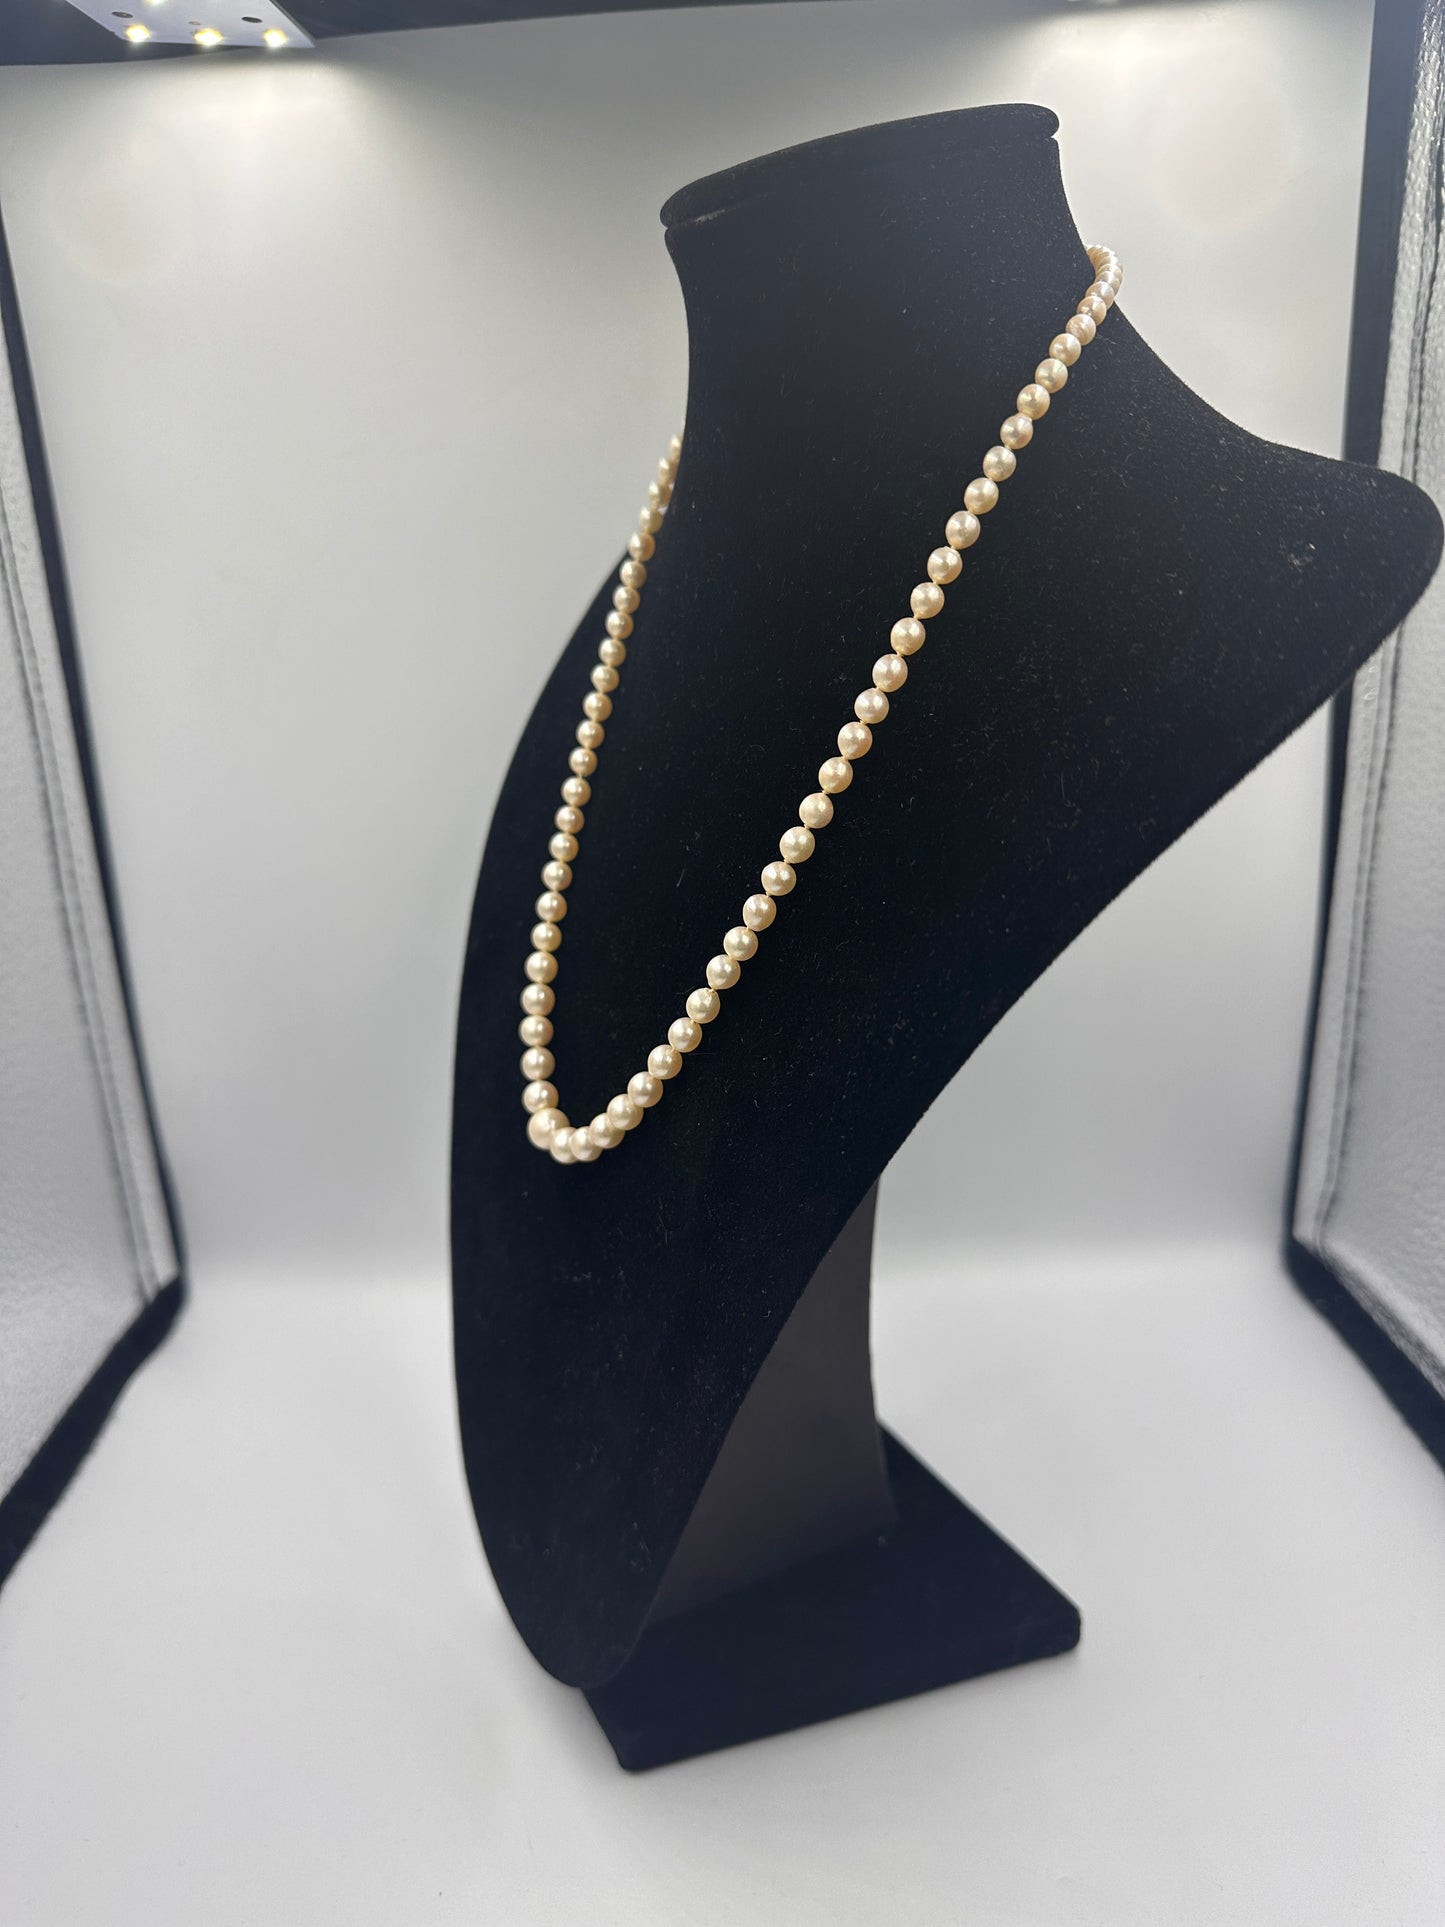 Perlenkette Abgestuft mit 835 Silber Verschluss